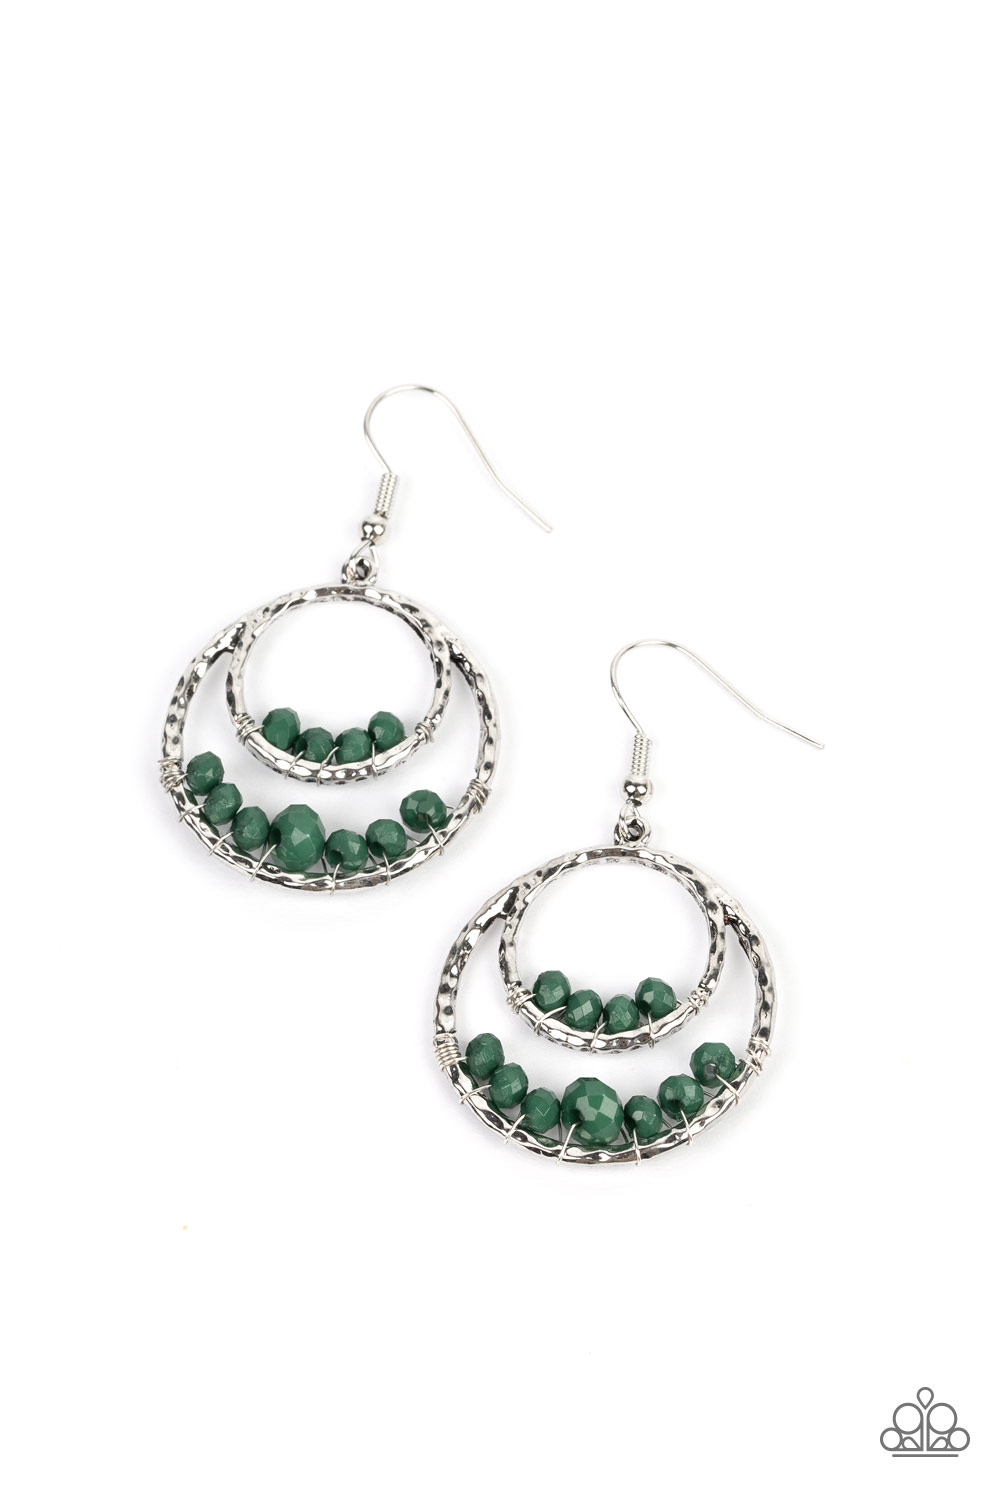 Earring - Bustling Beads - Green